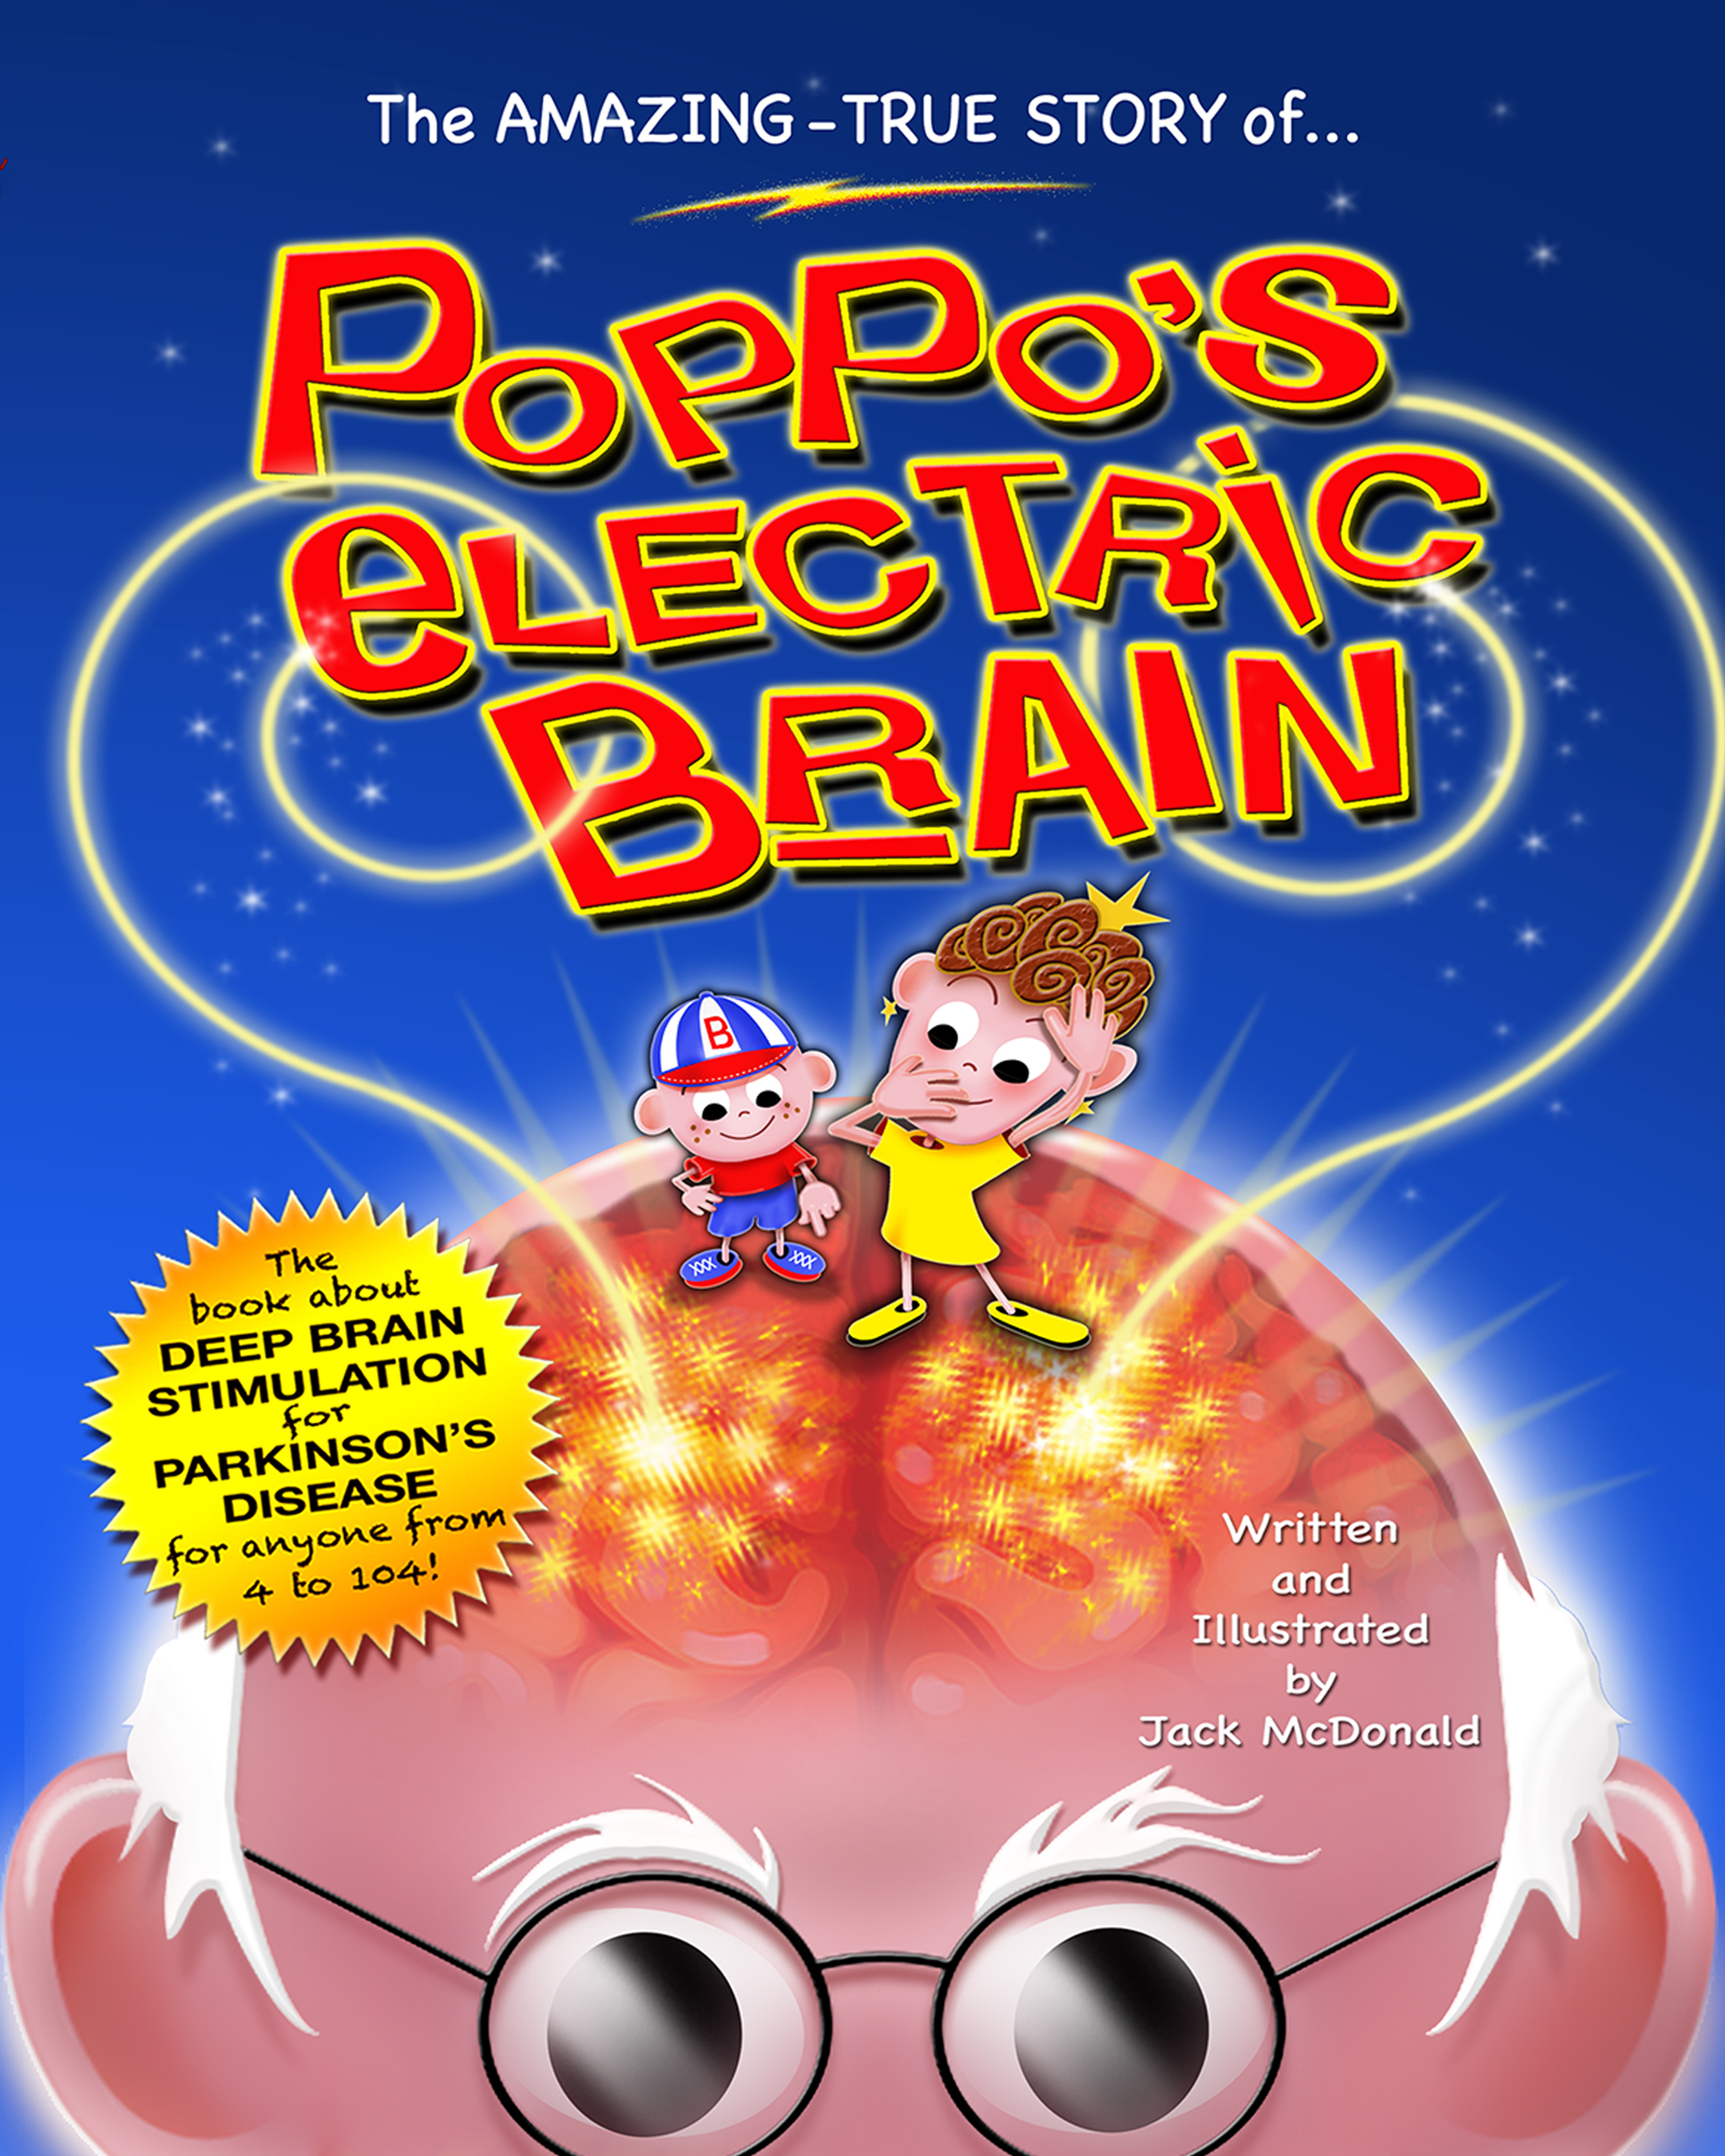 Poppo's Electric Brain  (PRNewsFoto/Jack McDonald)